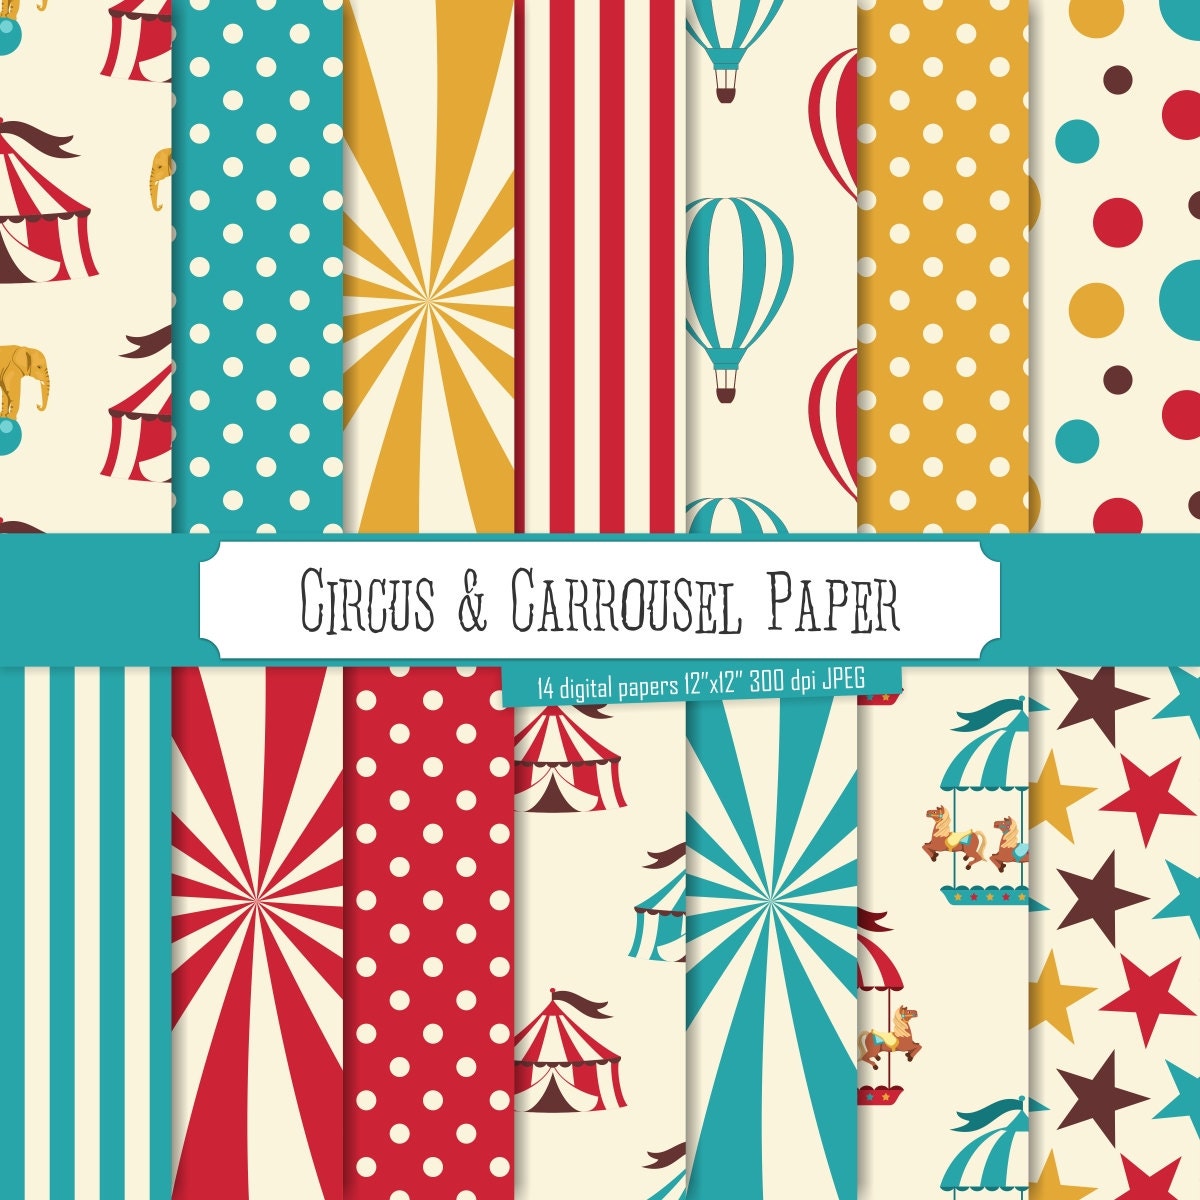 Buy 2 Get 1 Free Digital Paper Circus & Carrousel Paper